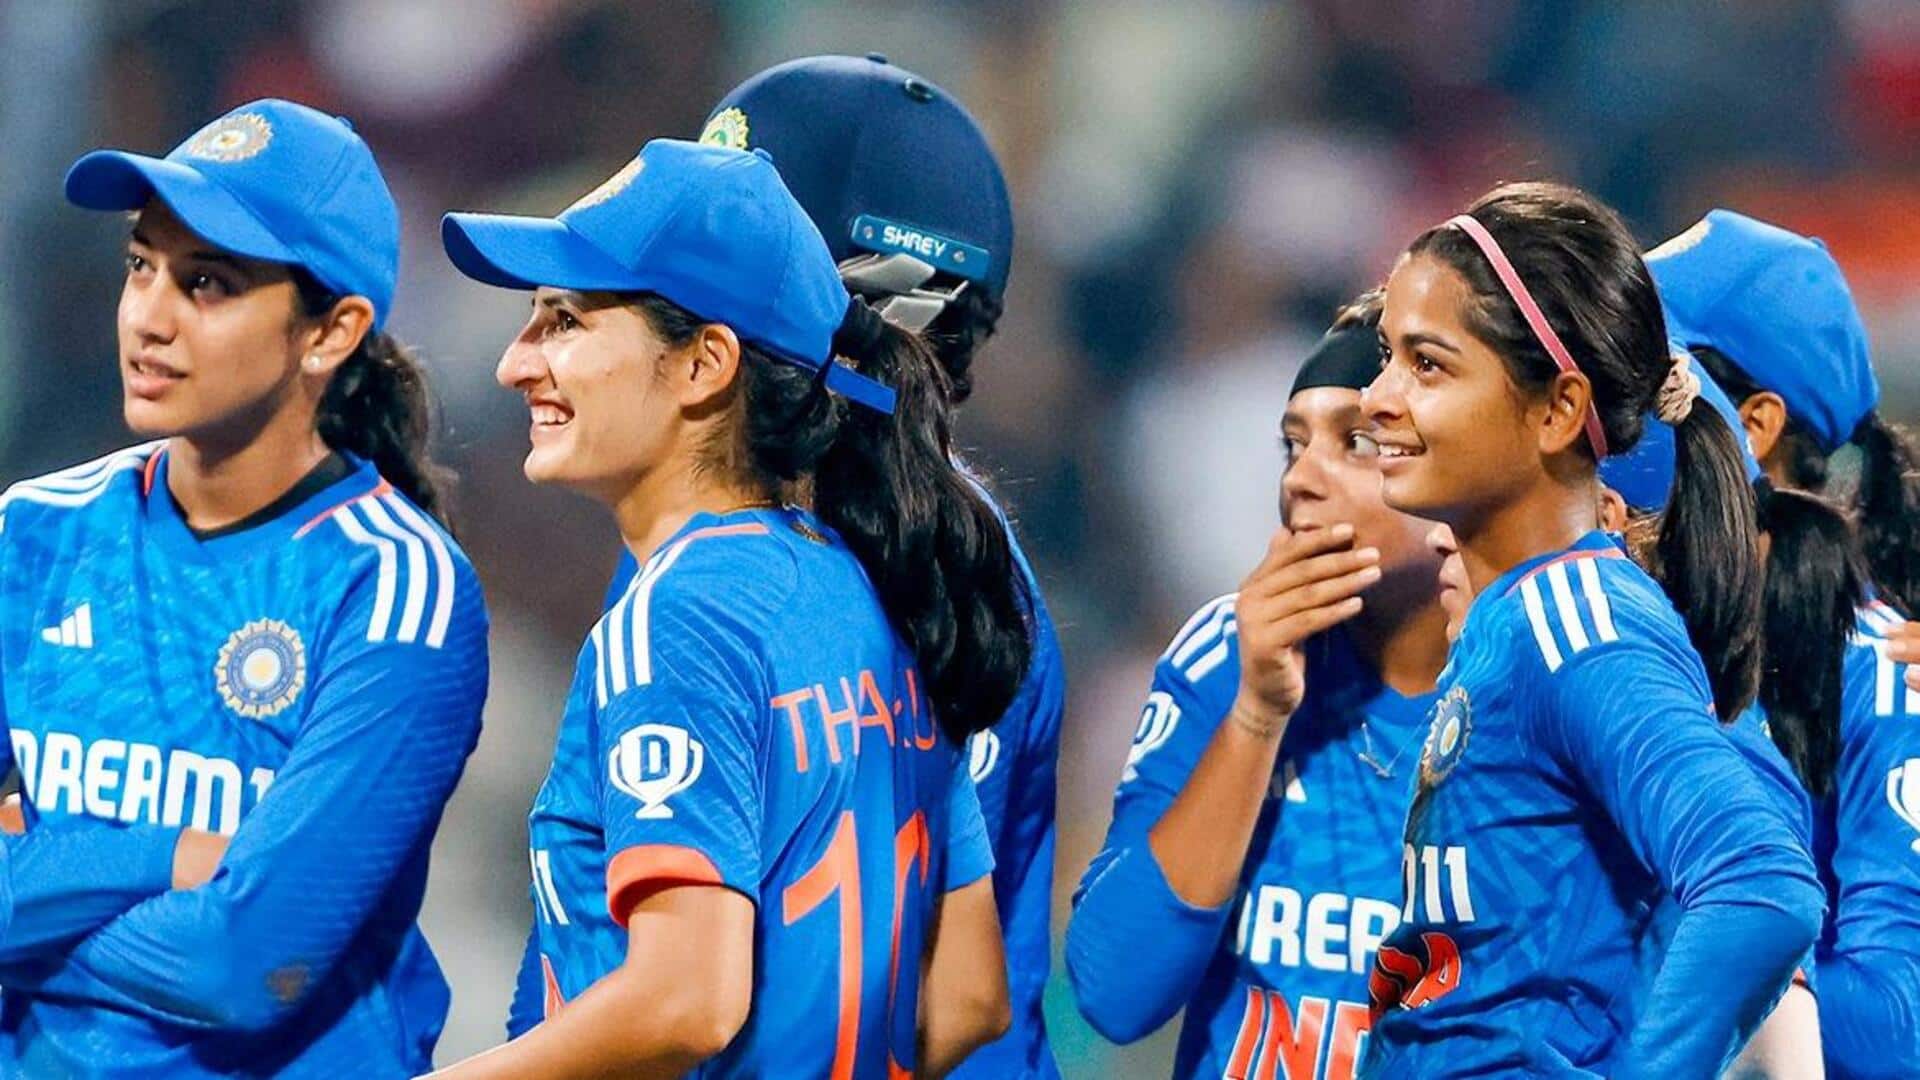 महिला क्रिकेट, तीसरा टी-20: भारत ने इंग्लैंड को 5 विकेट से हराया, 1-2 से गंवाई सीरीज 